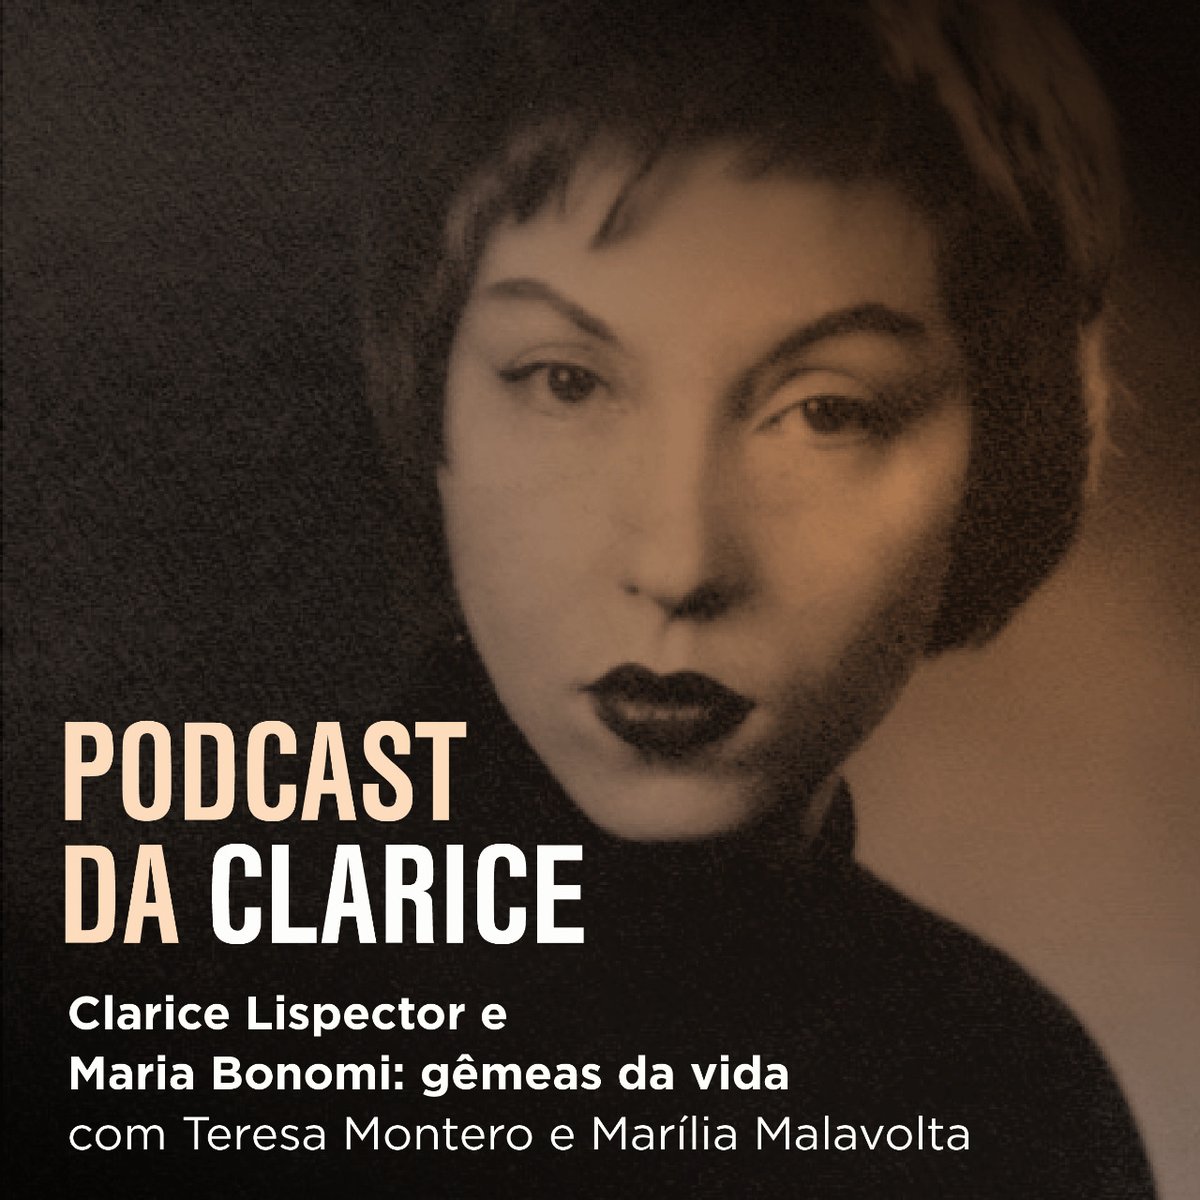 Também em homenagem ao aniversário de Clarice Lispector, gravamos dois episódios inéditos do nosso queridinho 'Podcast da Clarice'! Confira! 

spoti.fi/3dF9TQ8
spoti.fi/3Ix6bpI

#podcastdaclarice #claricelispector #rocco #livros #podcast